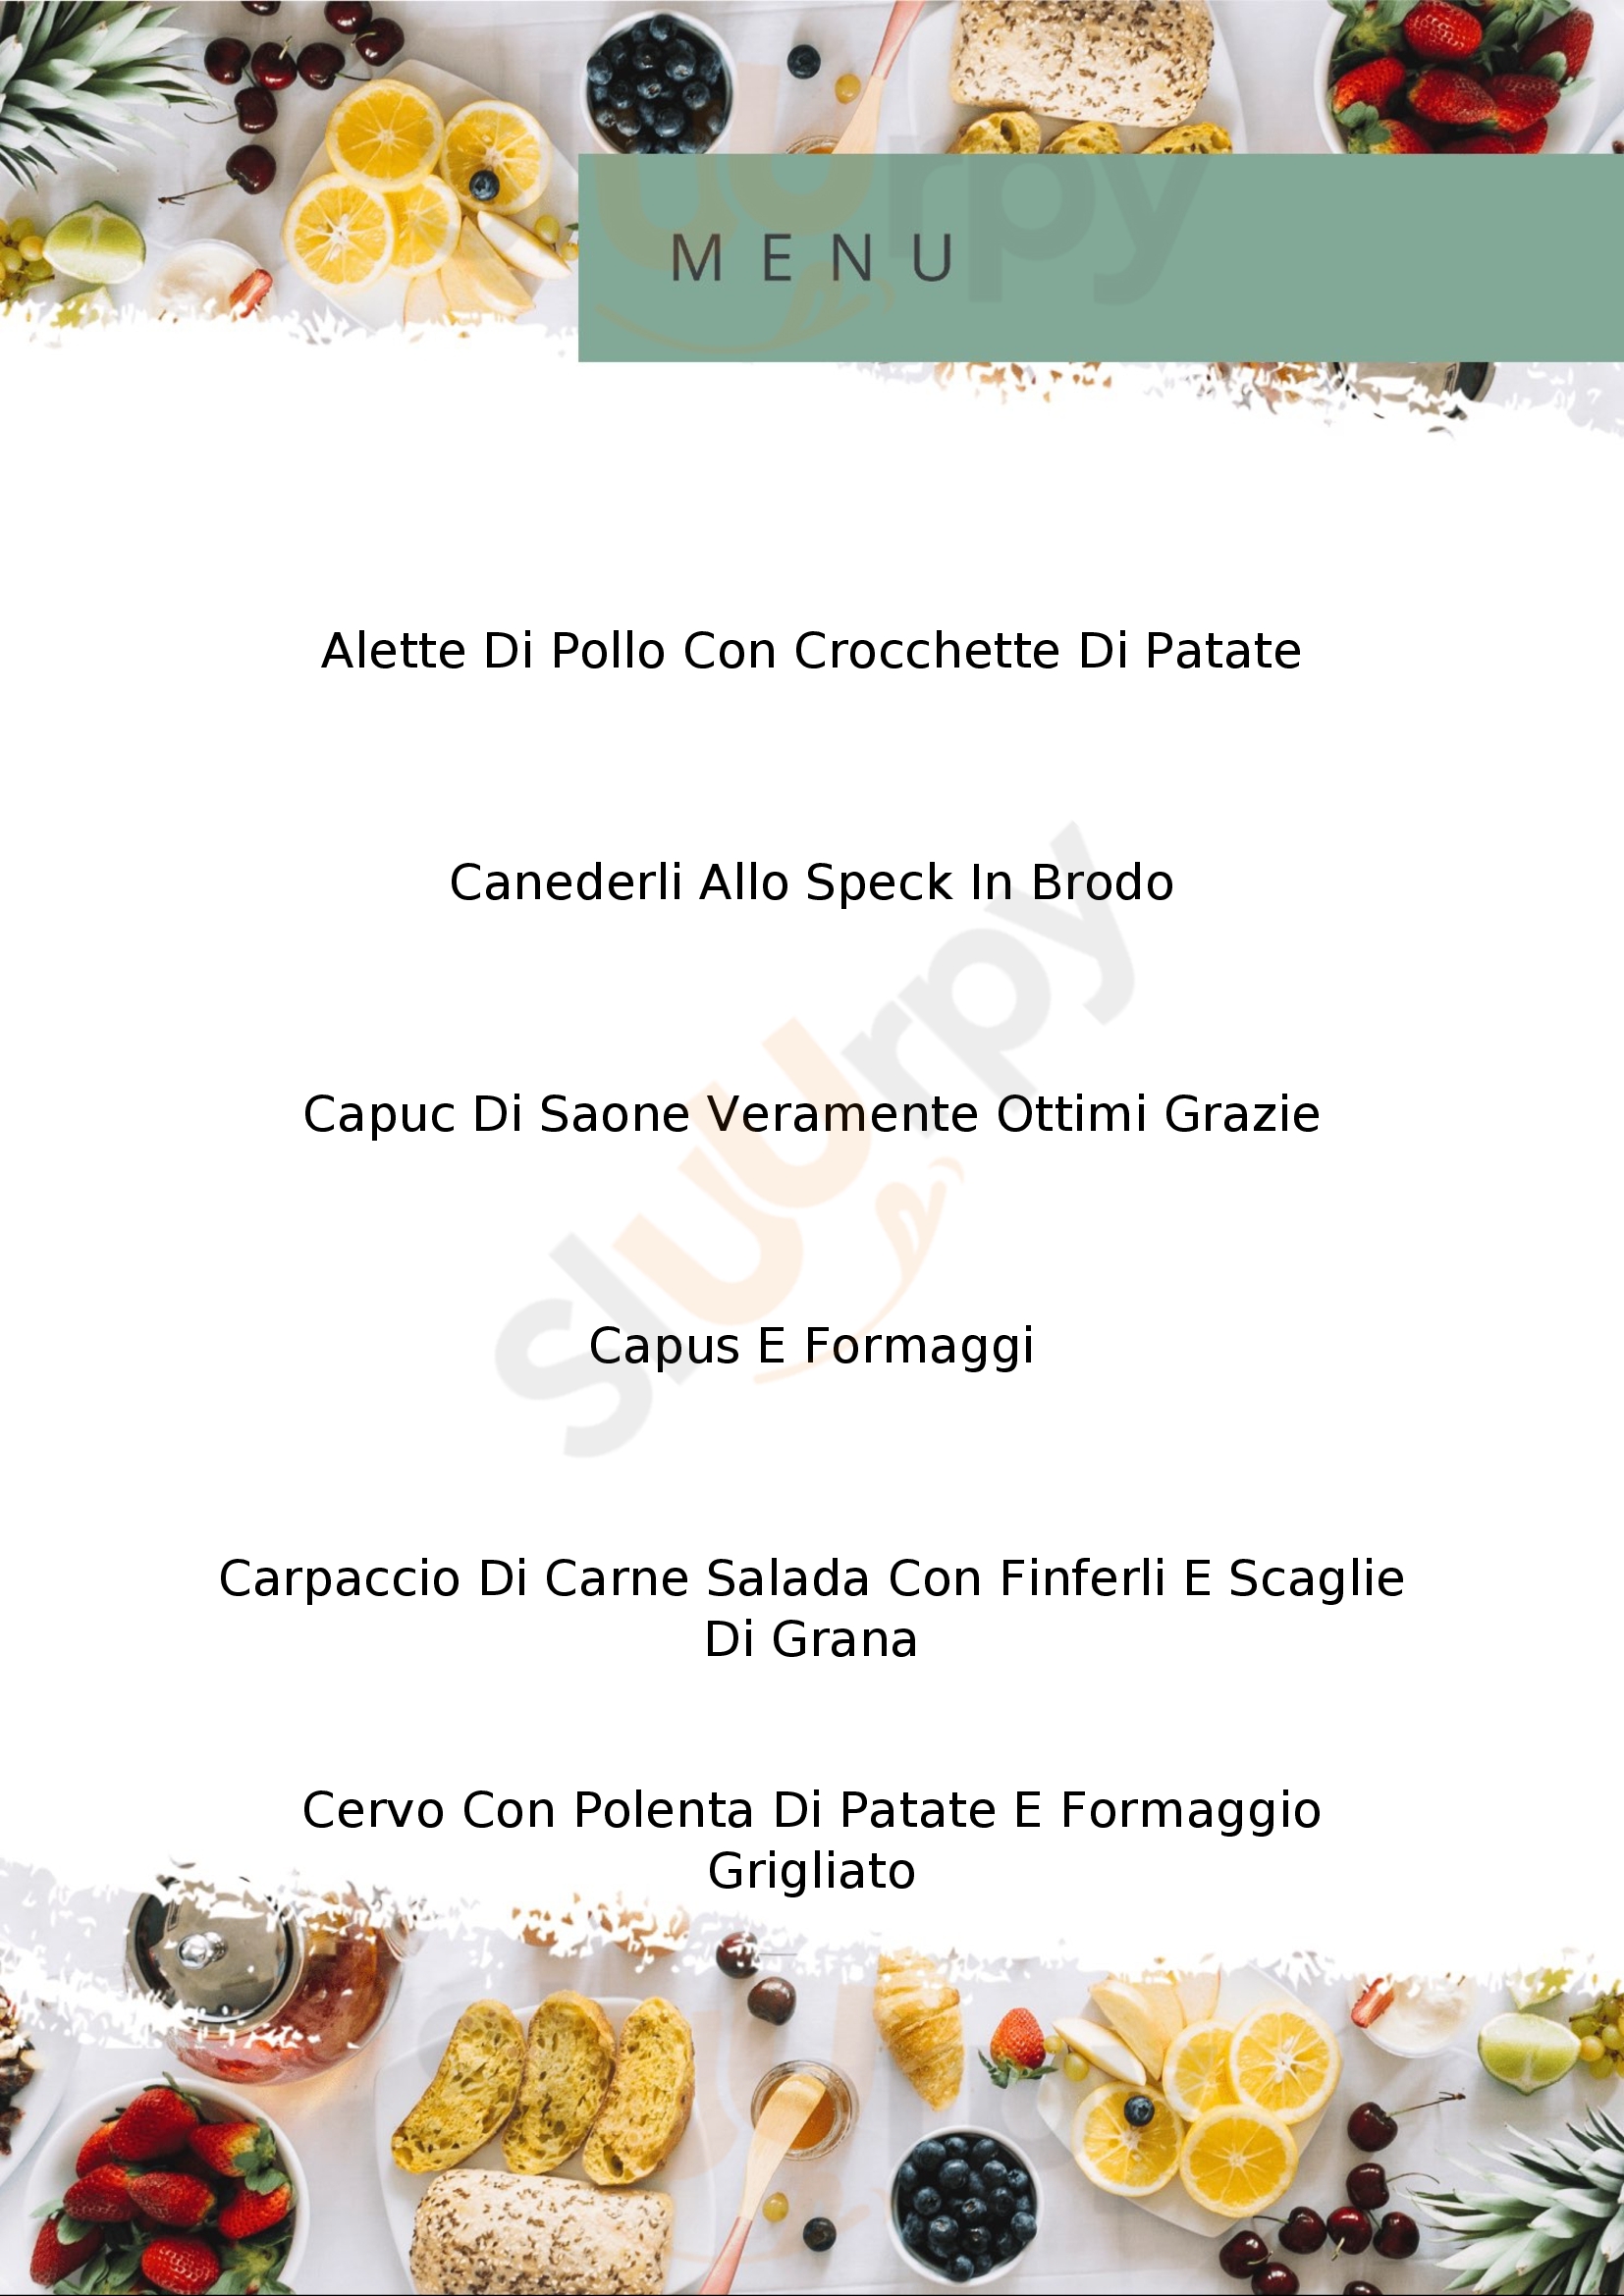 Albergo ristorante al Sole Tione di Trento menù 1 pagina